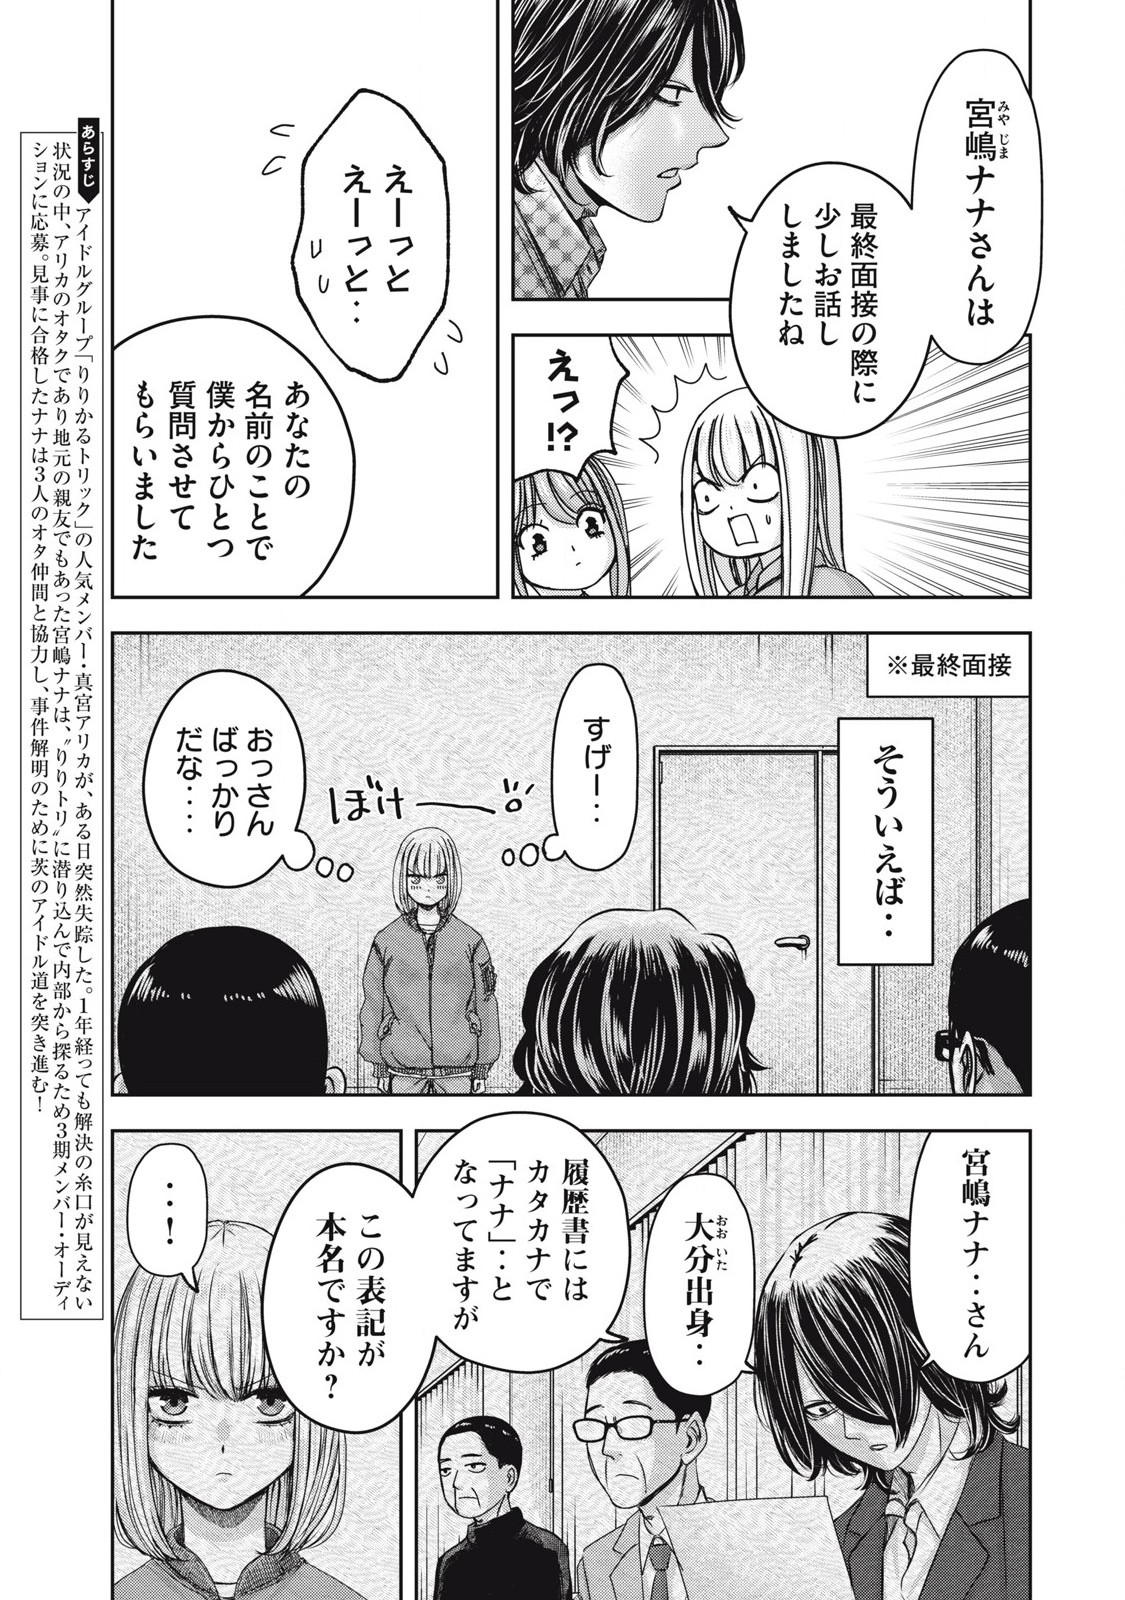 Watashi no Arika - Chapter 52 - Page 3